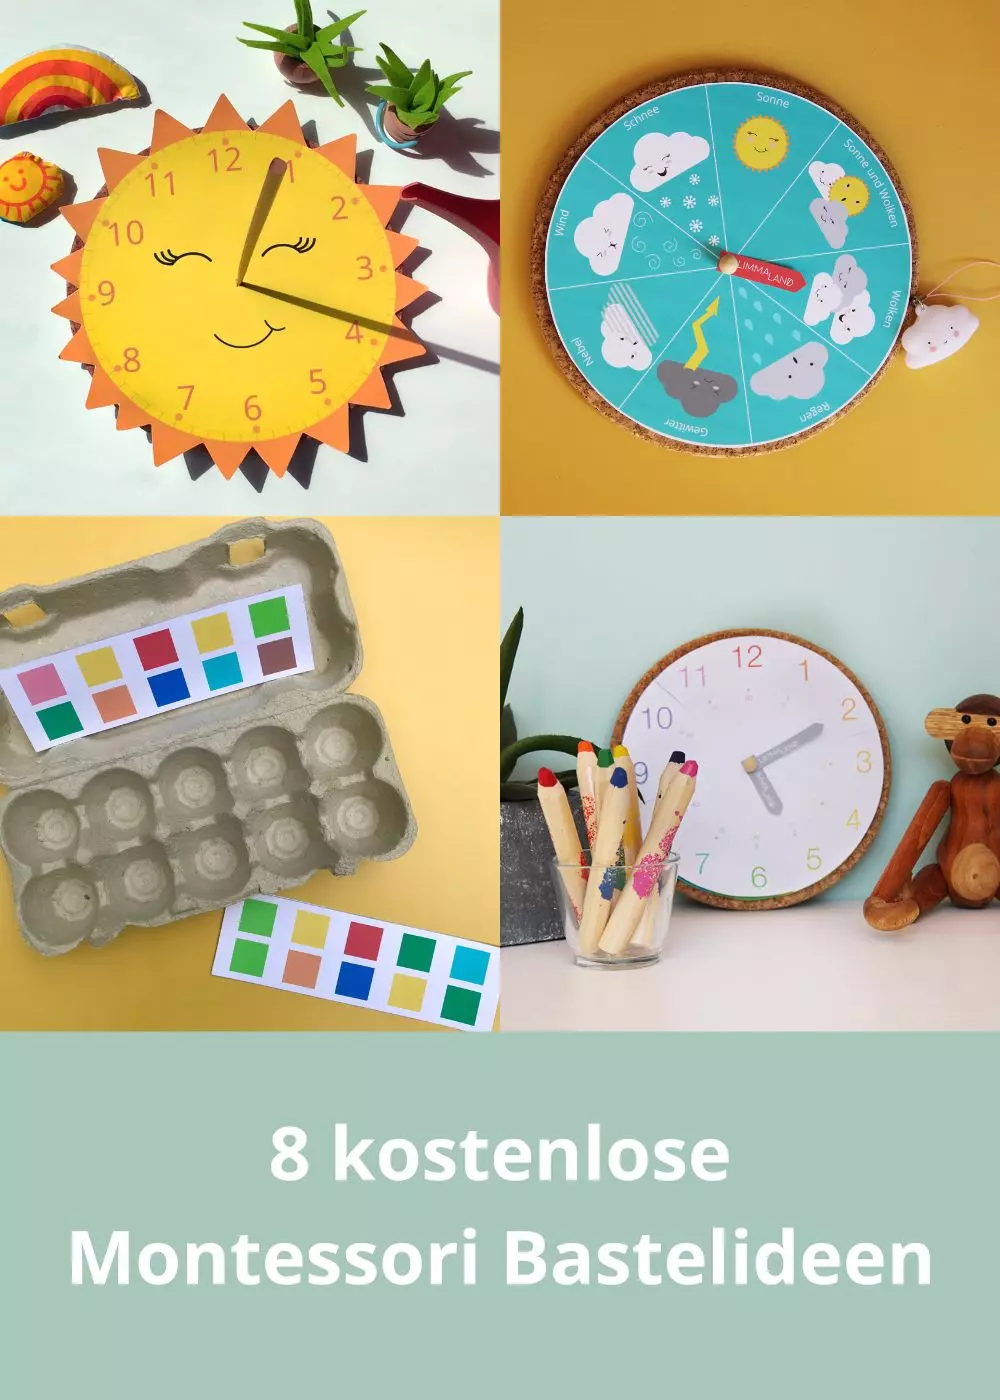 8 kostenlose Montessorie Bastelideen